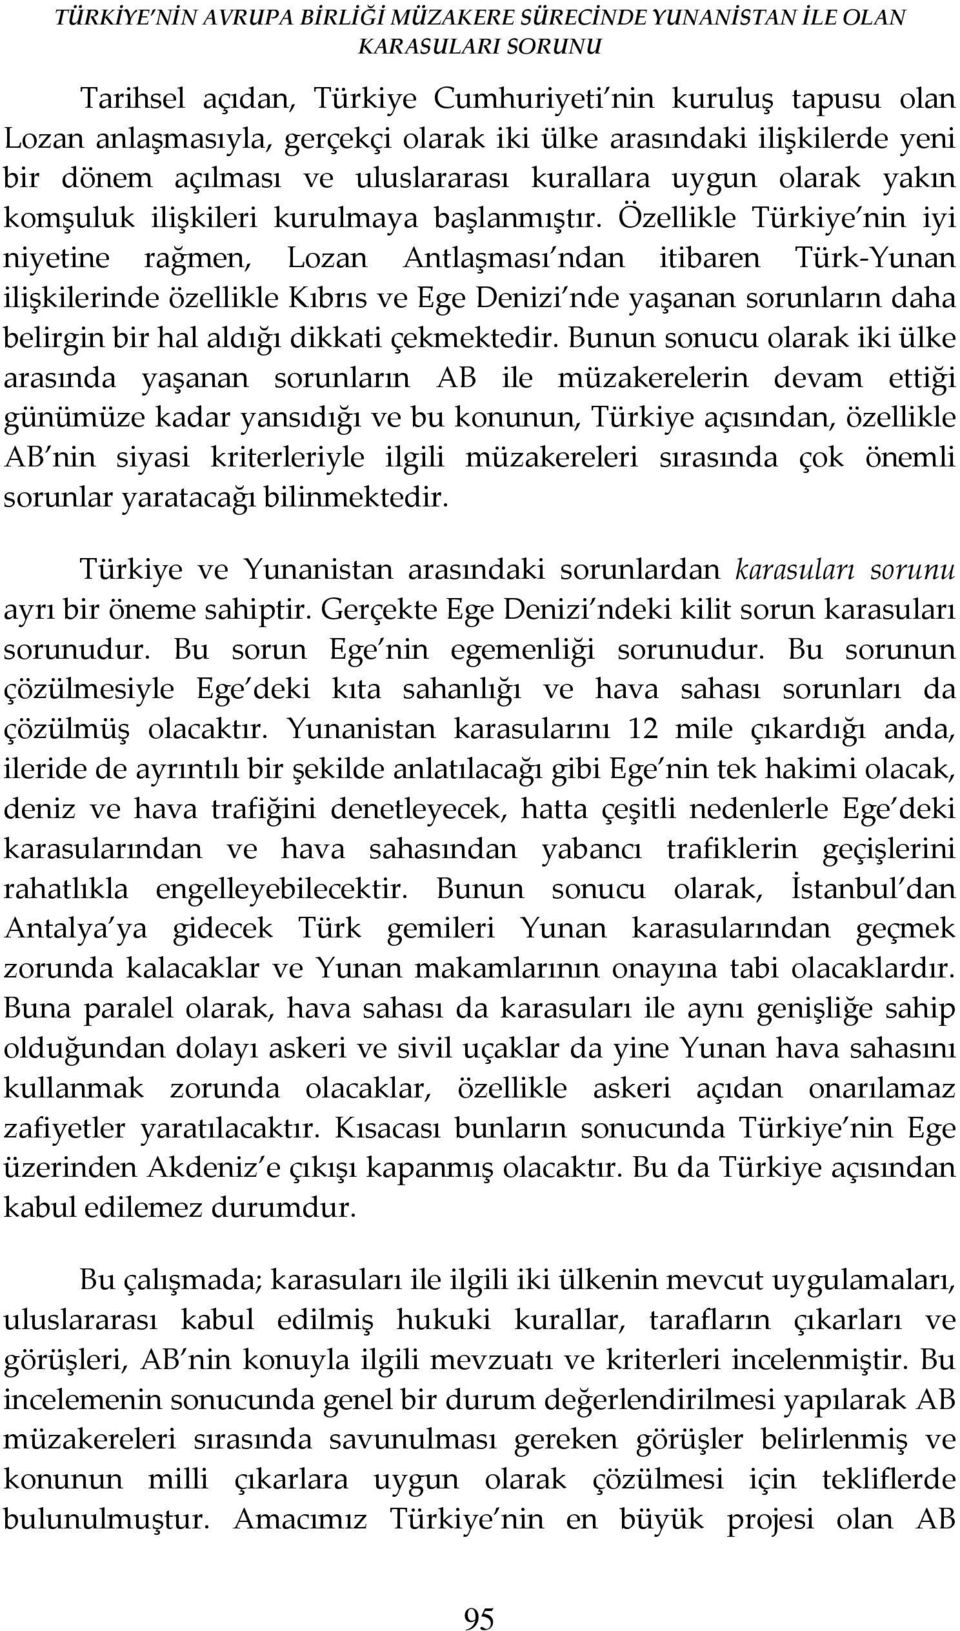 Özellikle Türkiye nin iyi niyetine rağmen, Lozan Antlaşması ndan itibaren Türk-Yunan ilişkilerinde özellikle Kıbrıs ve Ege Denizi nde yaşanan sorunların daha belirgin bir hal aldığı dikkati